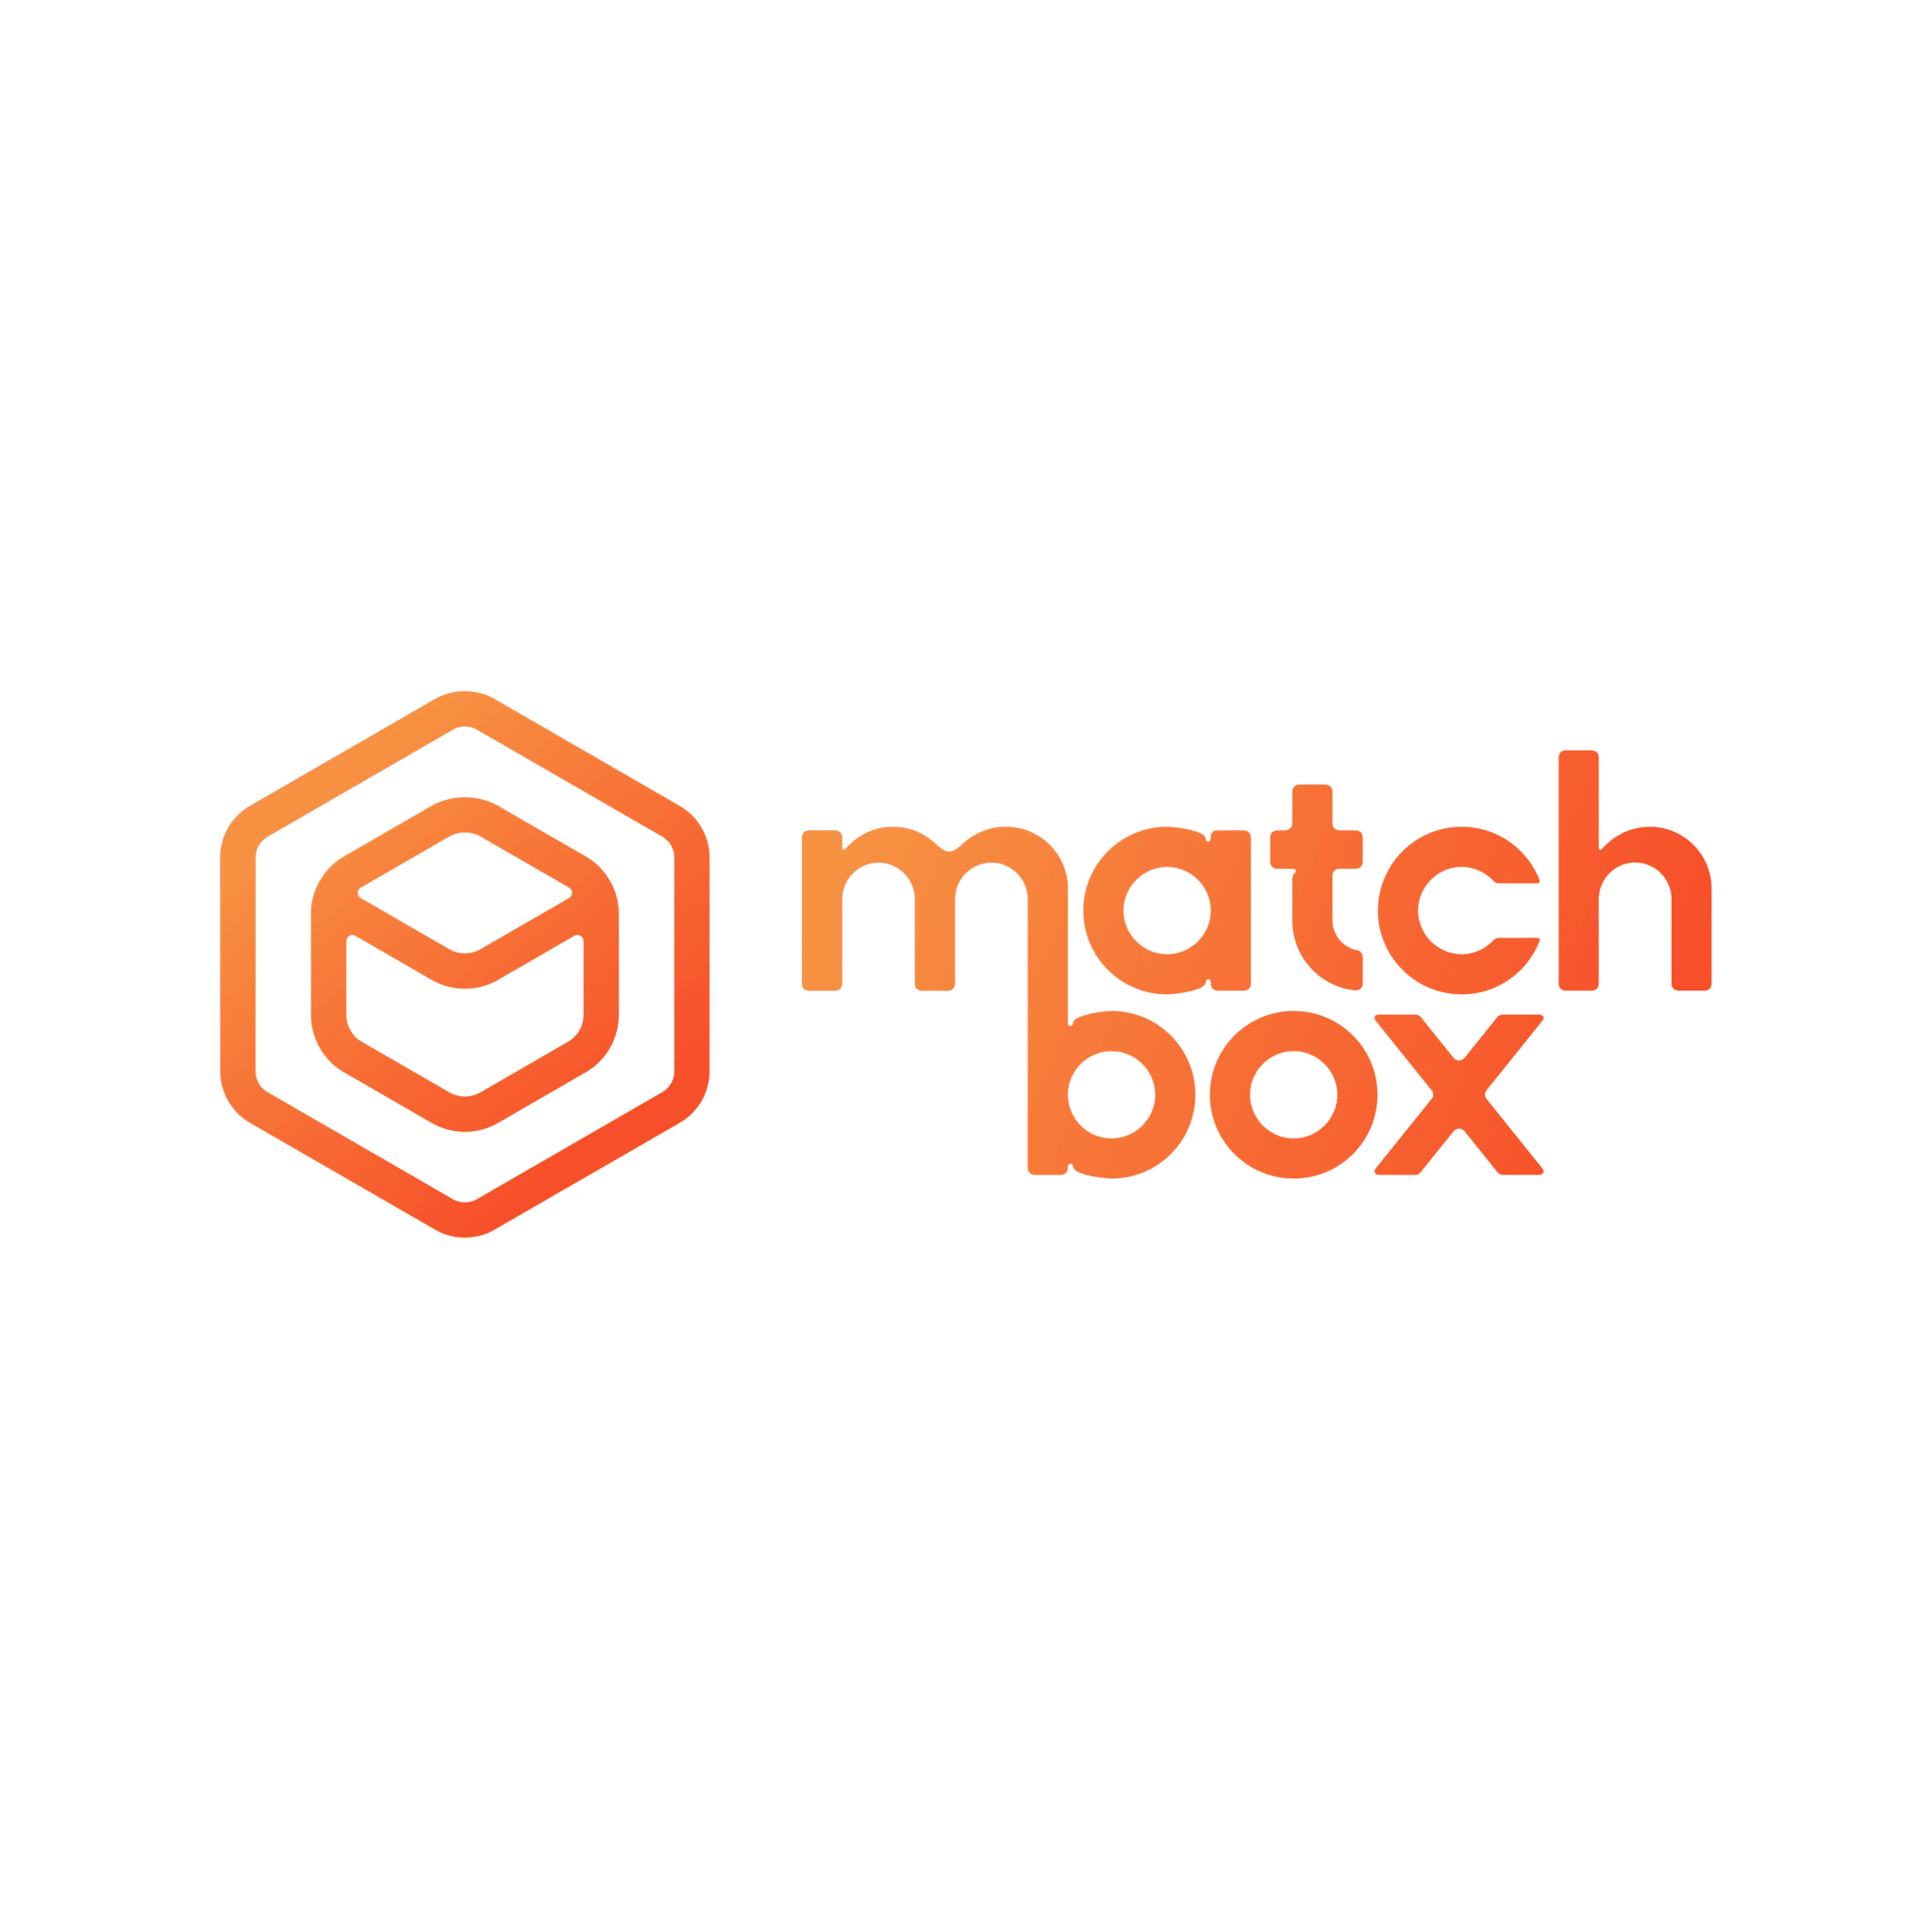 株式会社Matchbox Technologies